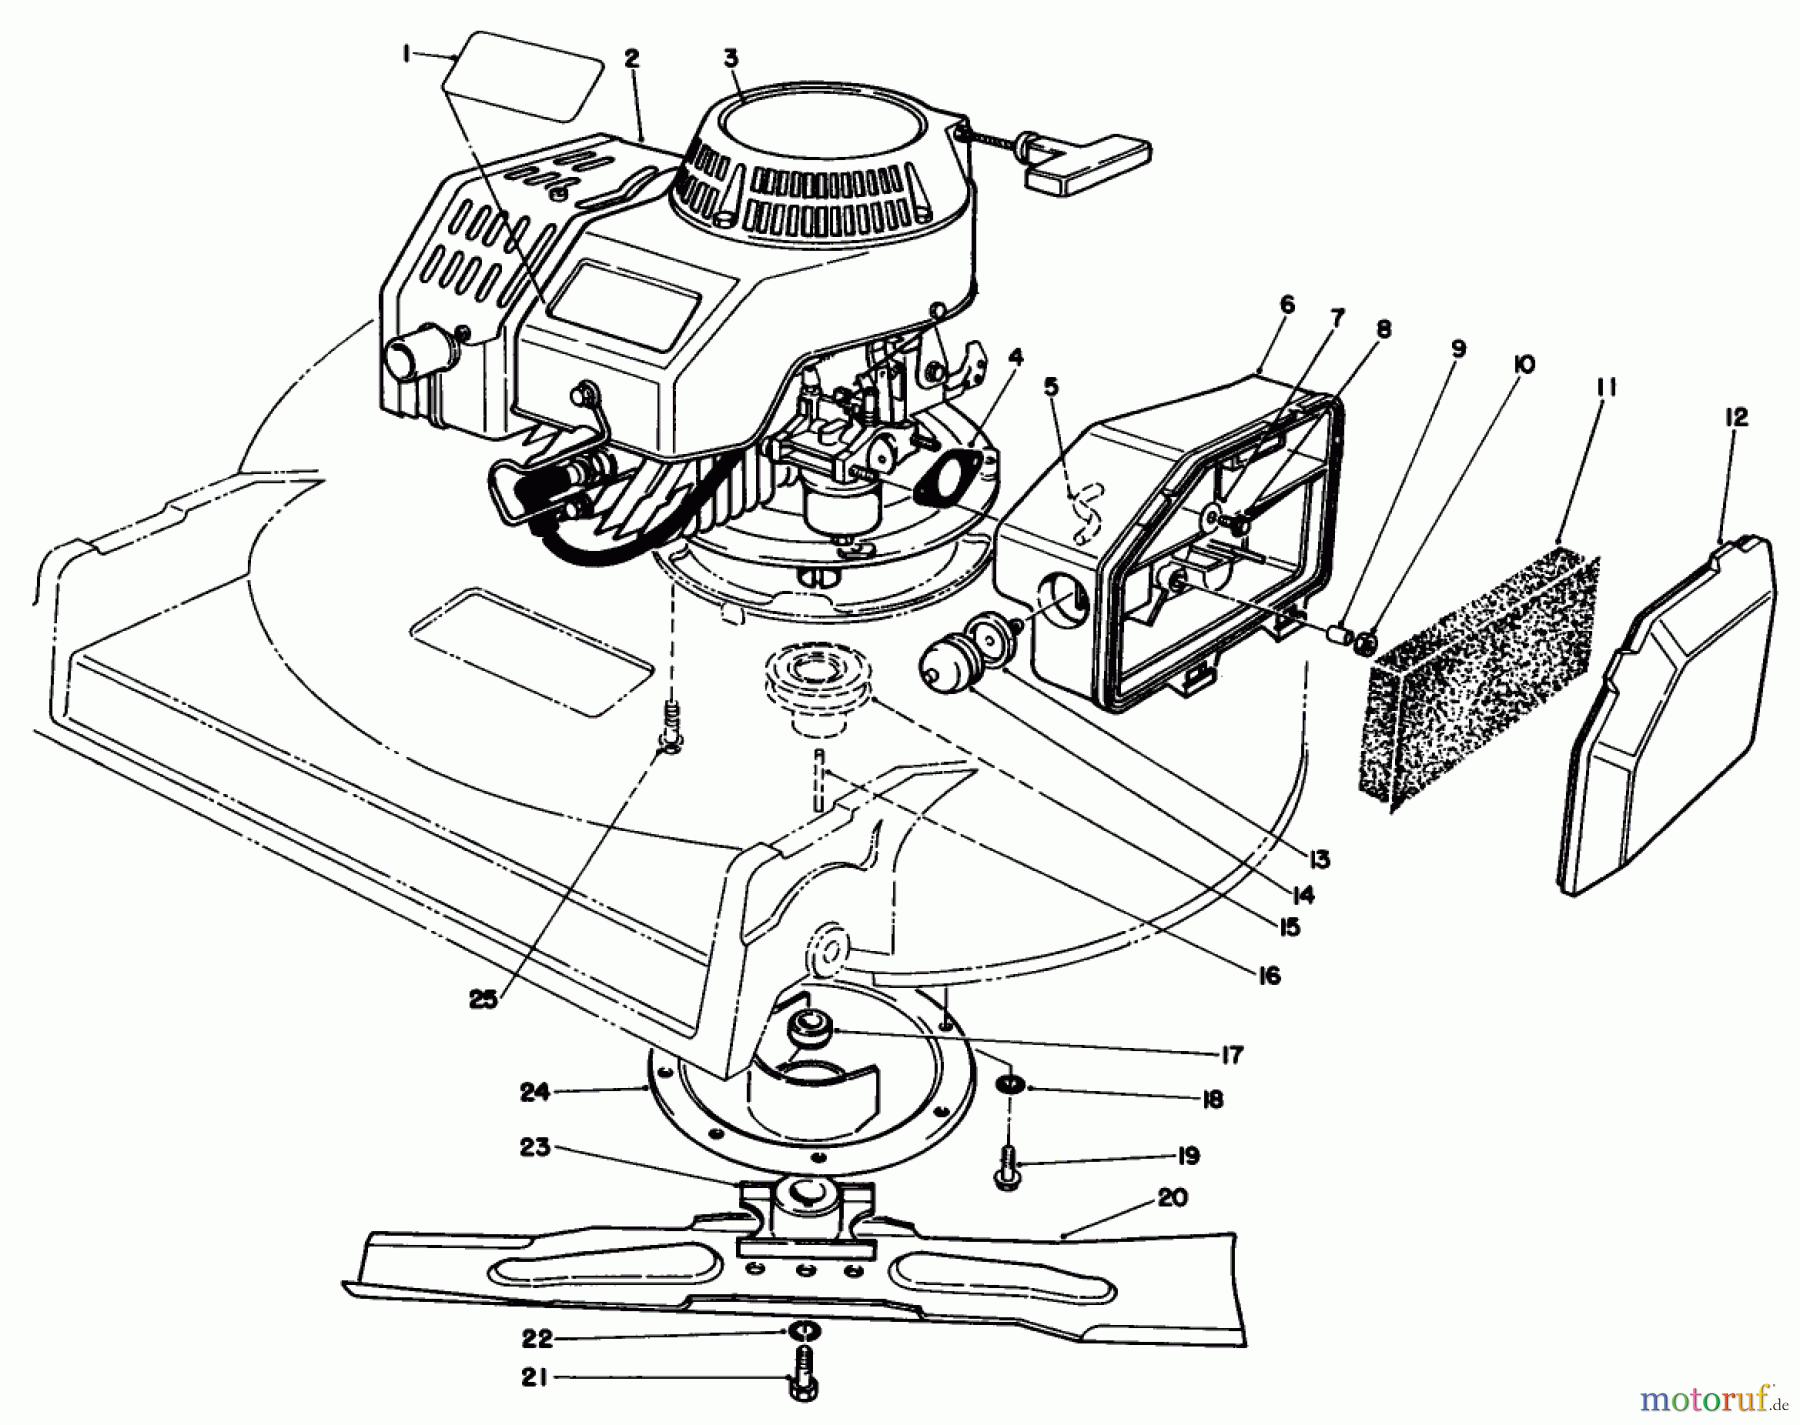  Toro Neu Mowers, Walk-Behind Seite 2 22036 - Toro Lawnmower, 1992 (2000001-2999999) ENGINE ASSEMBLY